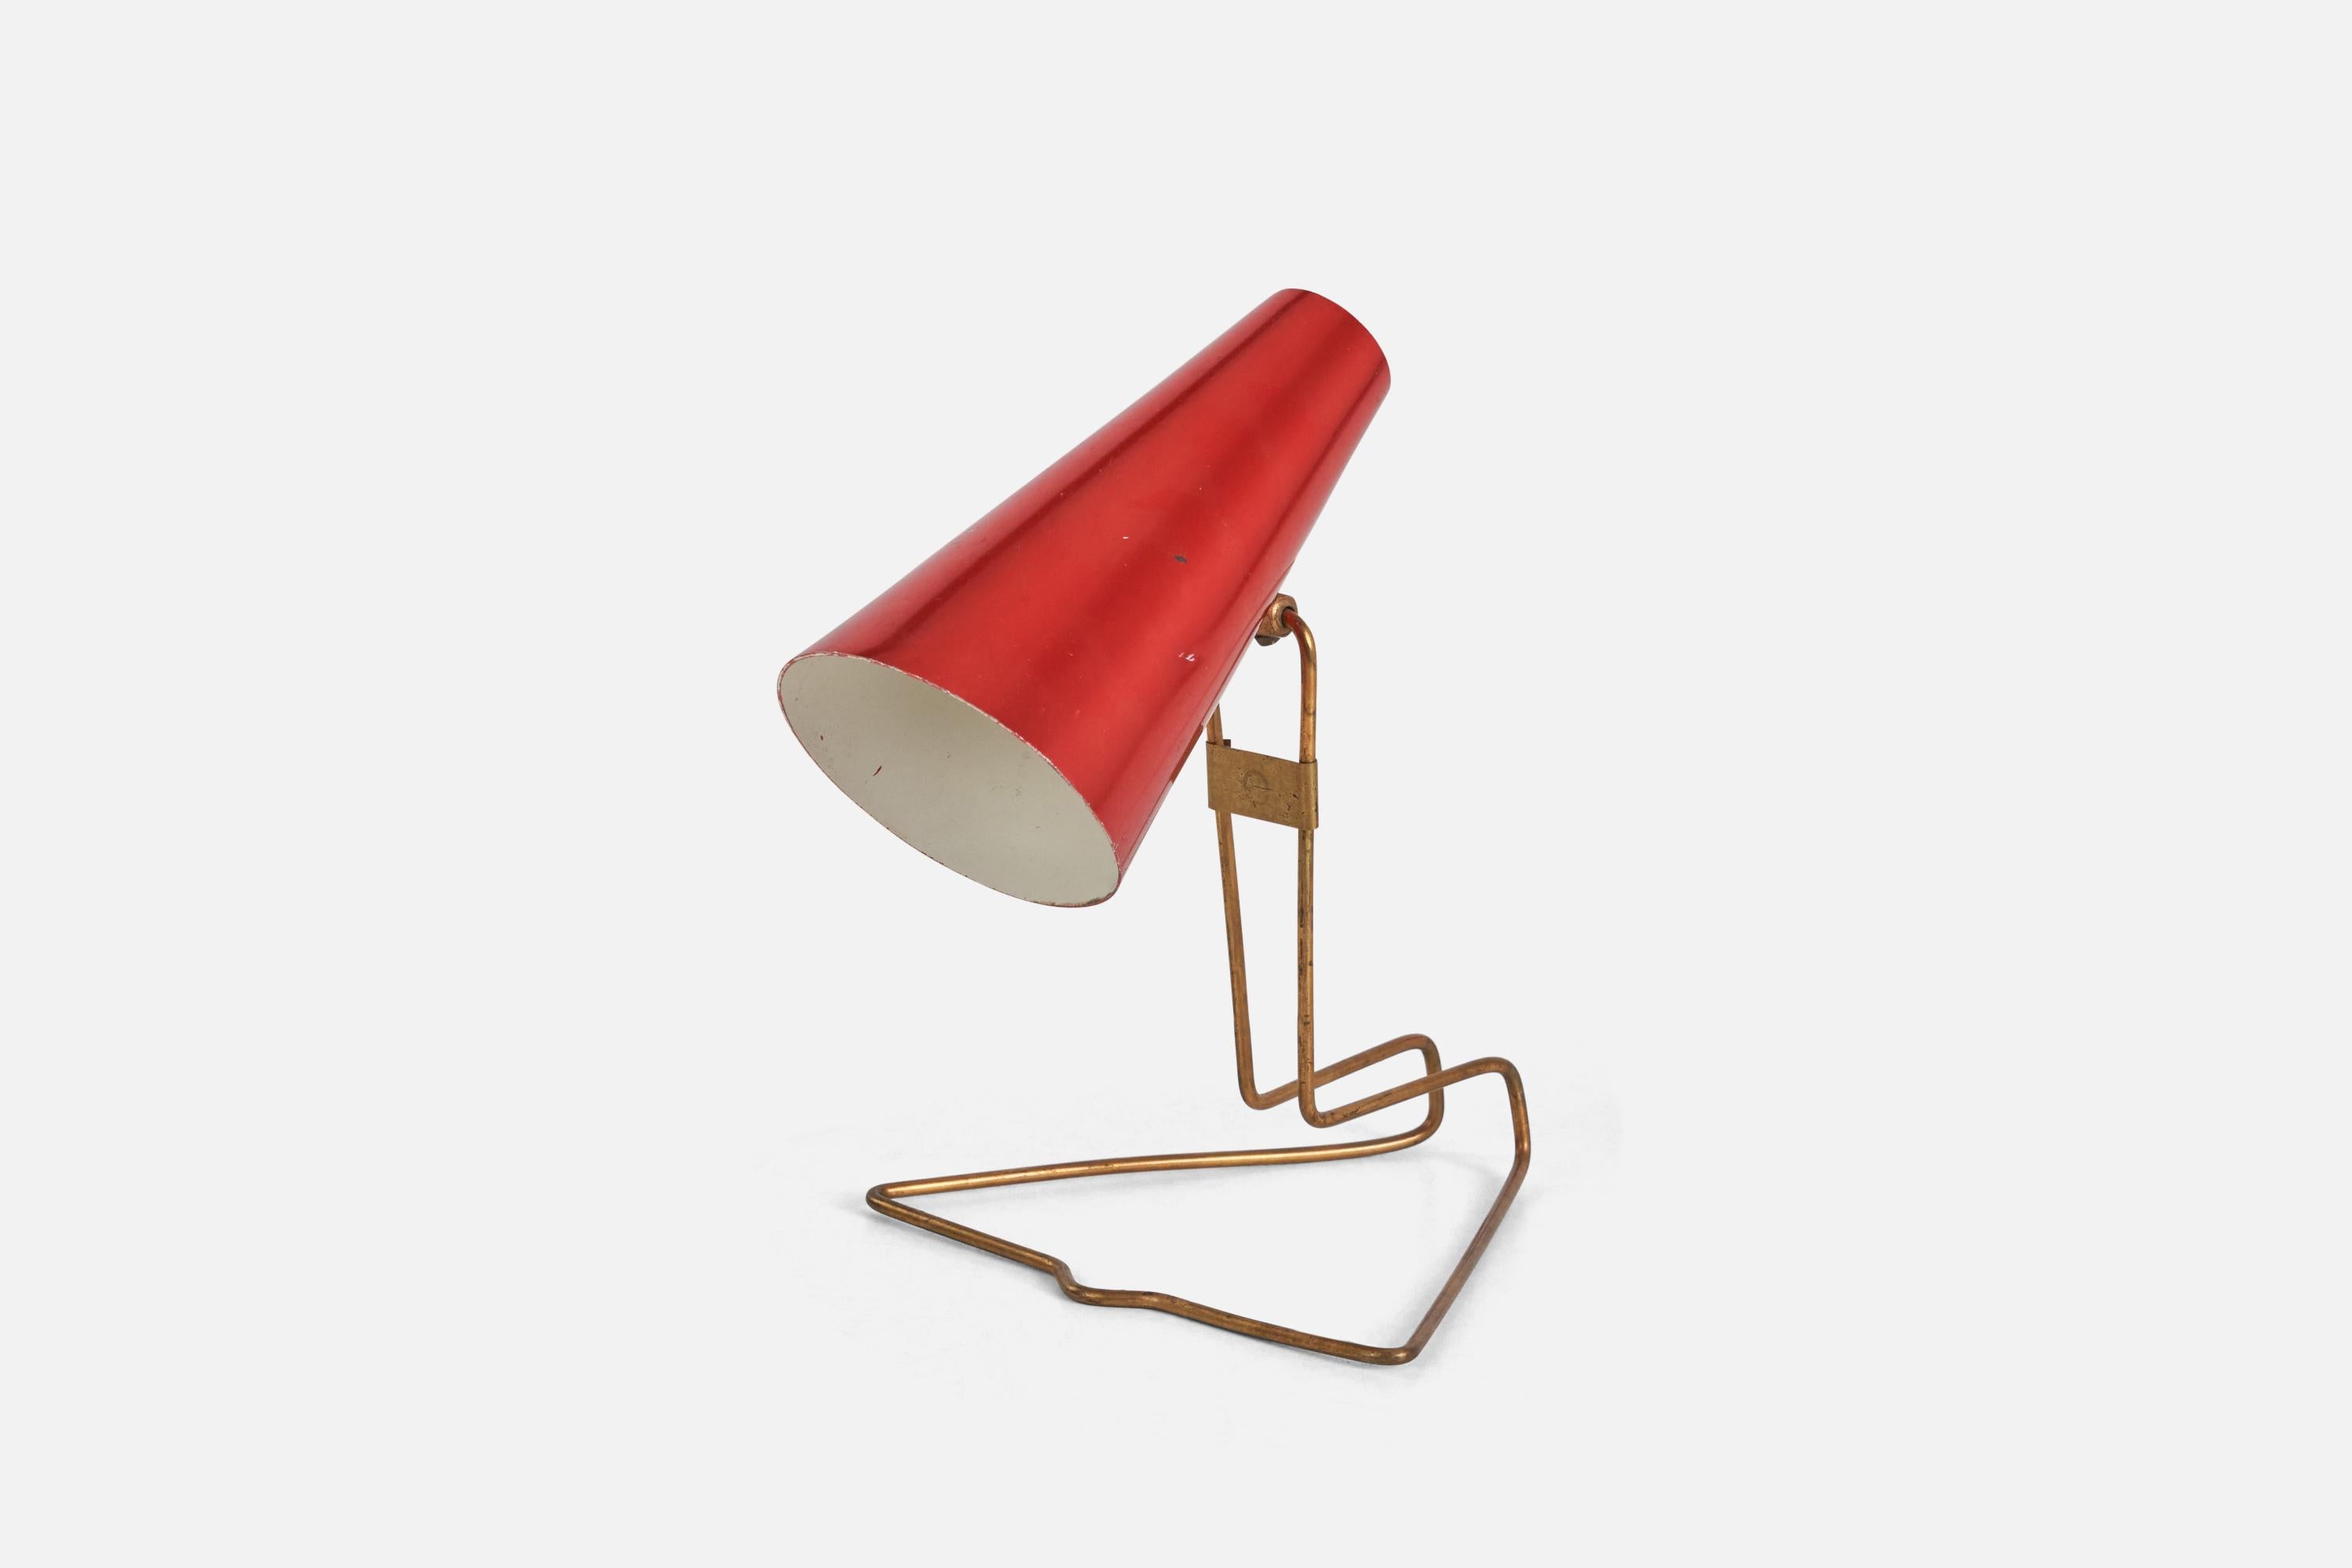 Lampe de table réglable en laiton et métal laqué rouge, conçue et produite par Idman Oy, Finlande, années 1950.

Dimensions variables, mesurées comme illustré dans la première image.

La douille accepte les ampoules E-14.

Il n'y a pas de